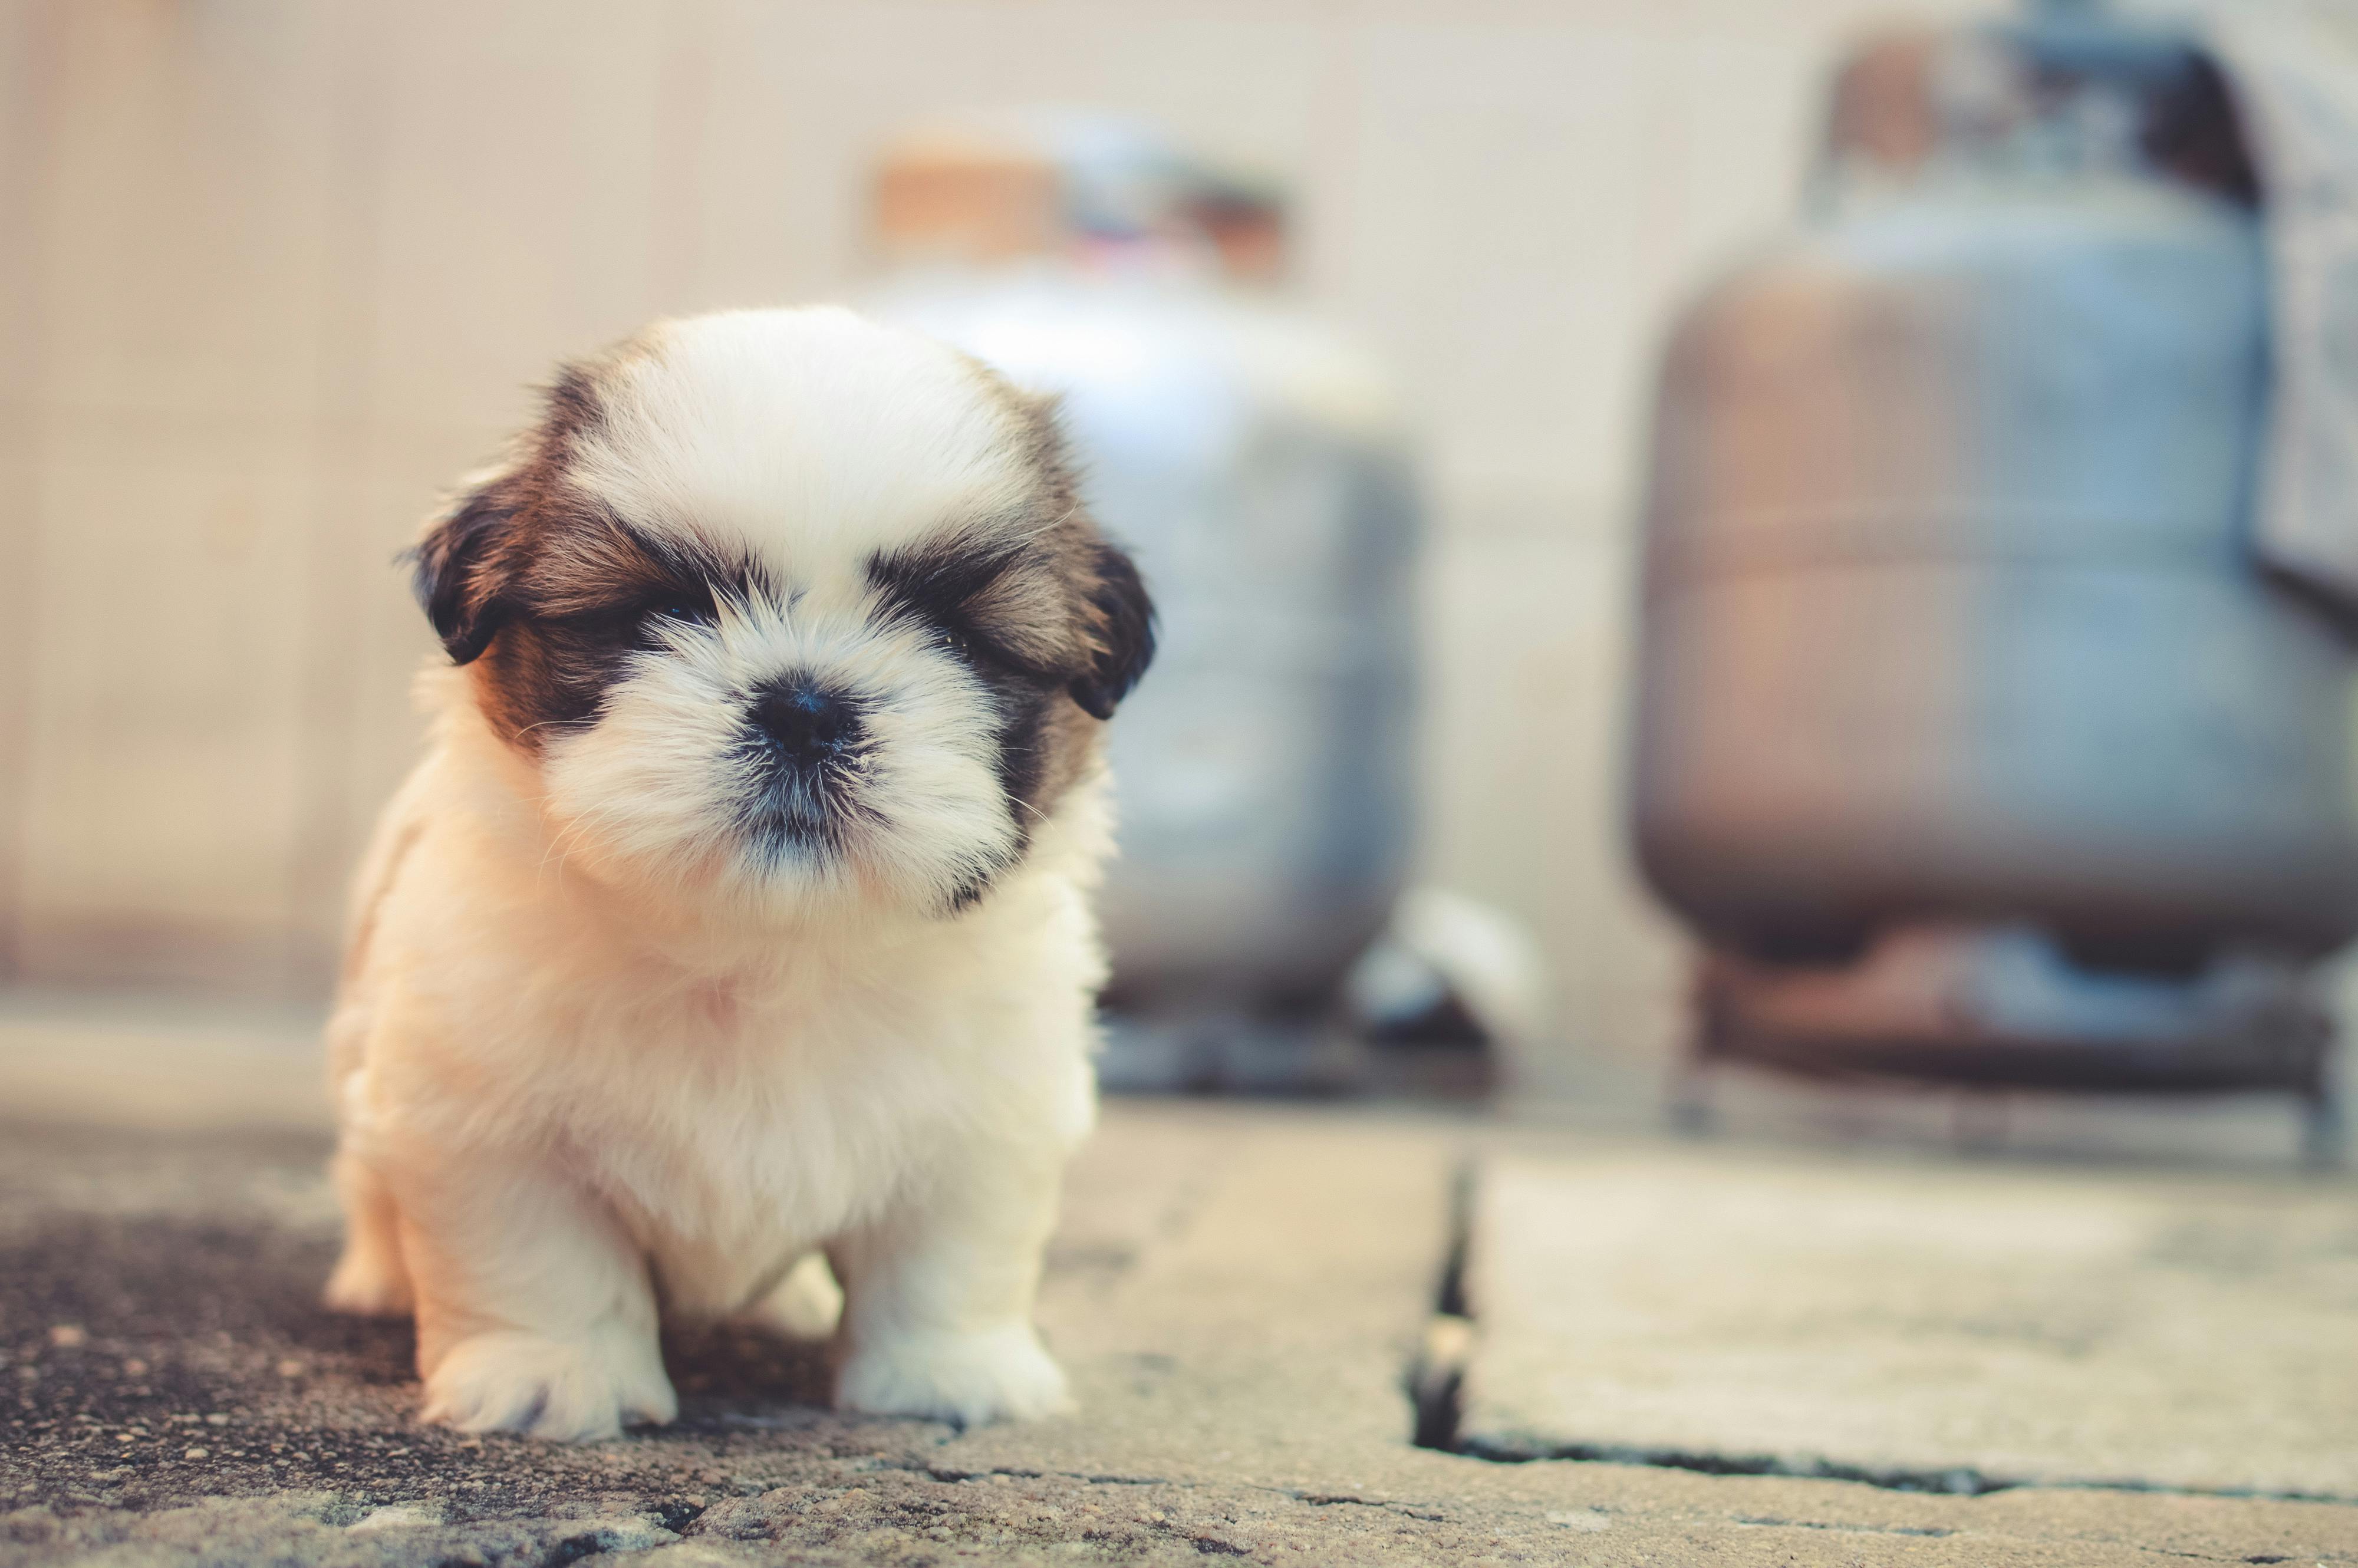 Khám phá những bức hình ảnh chó con đáng yêu nhất trên trang web của chúng tôi! Tất cả các loài chó nhỏ, từ Shih Tzu đến Pomeranian, đều có trong bộ sưu tập của chúng tôi. Bạn sẽ đắm say trong vẻ đáng yêu của những chú chó bé này, chắc chắn sẽ khiến bạn cảm thấy vui vẻ và thư giãn.